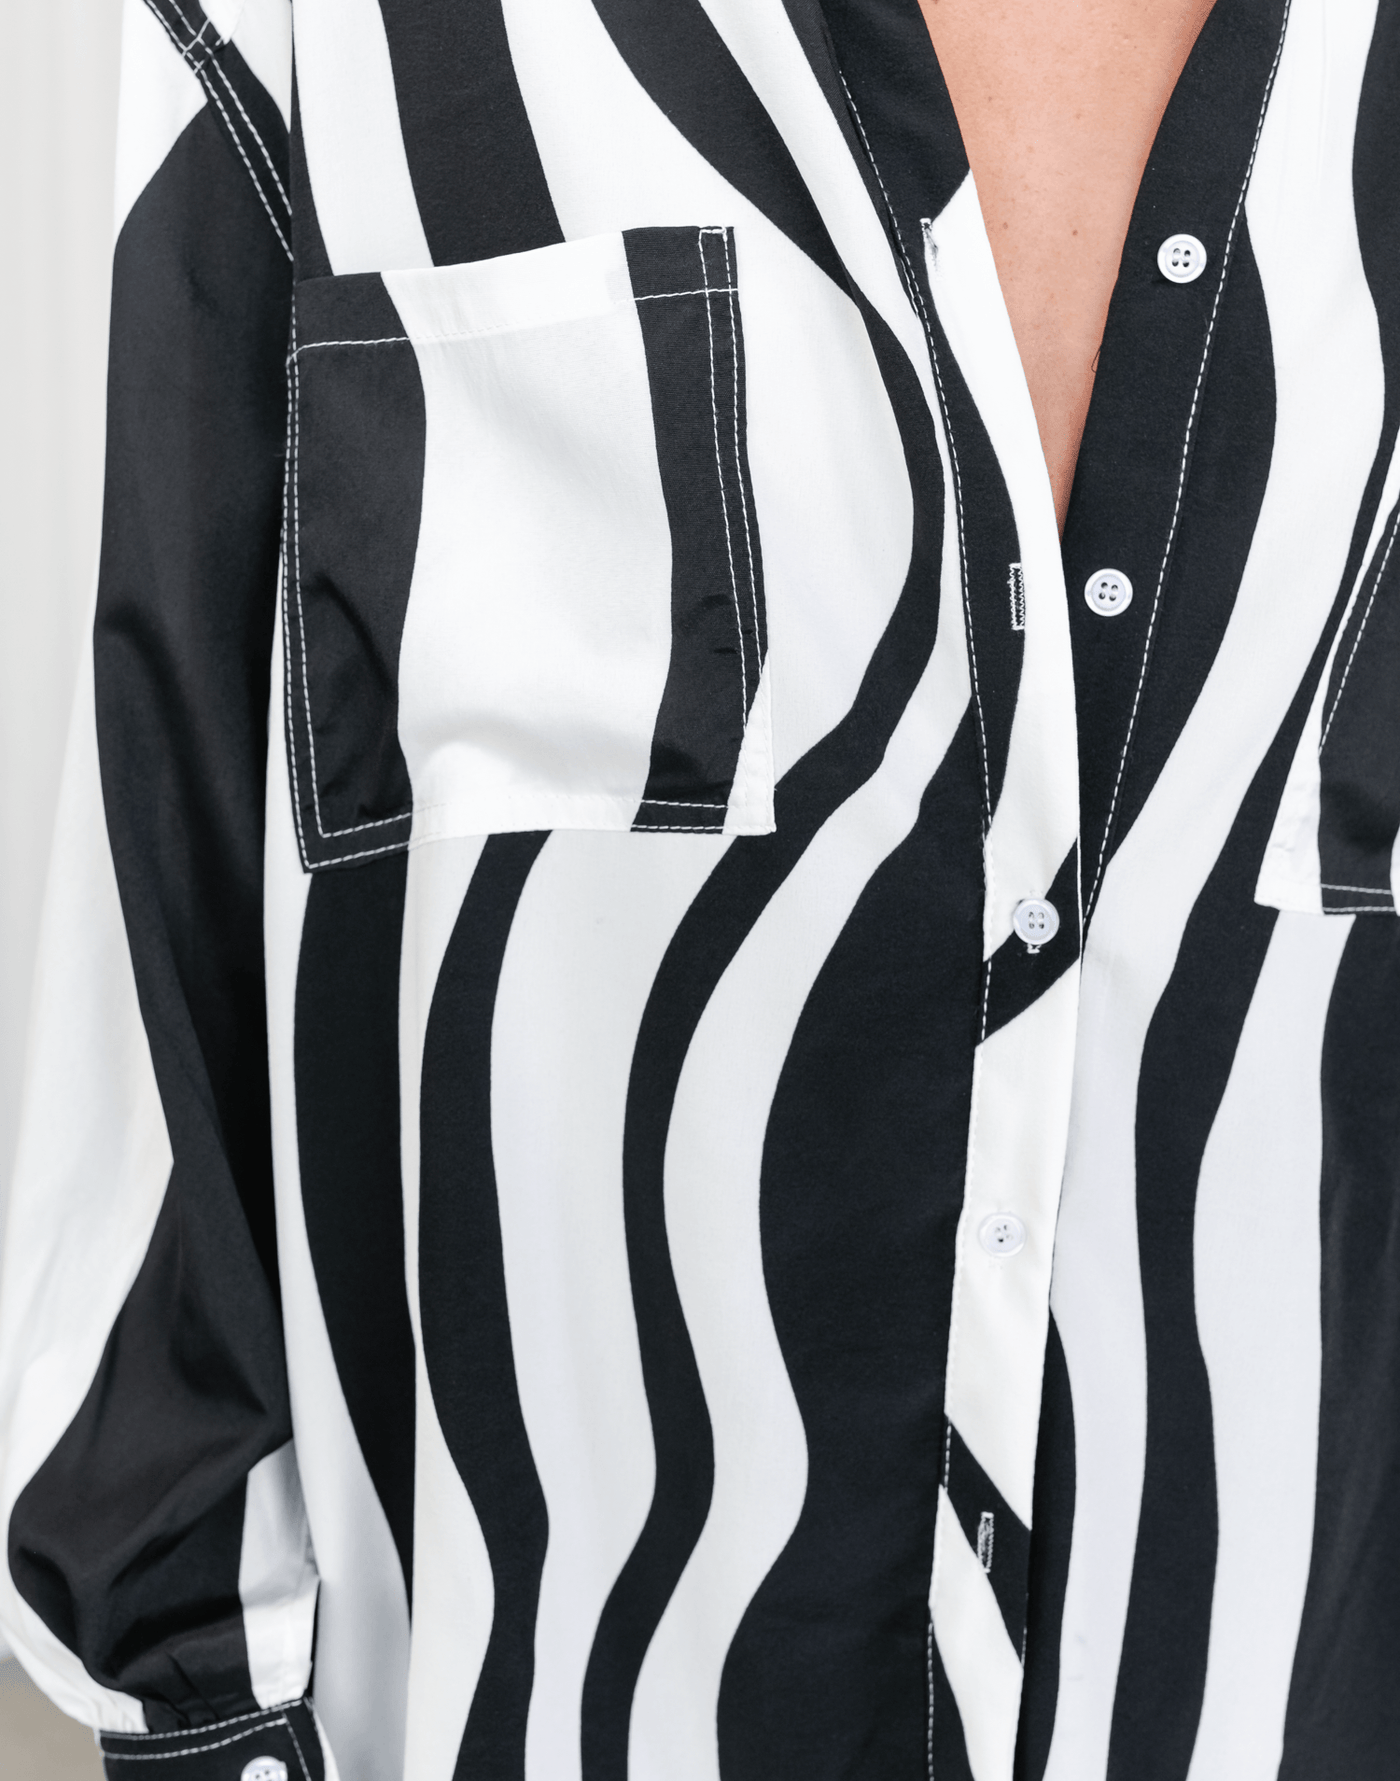 Zita Shirt - Zebra Print Oversized Shirt - Women's Shirt - Charcoal Clothing